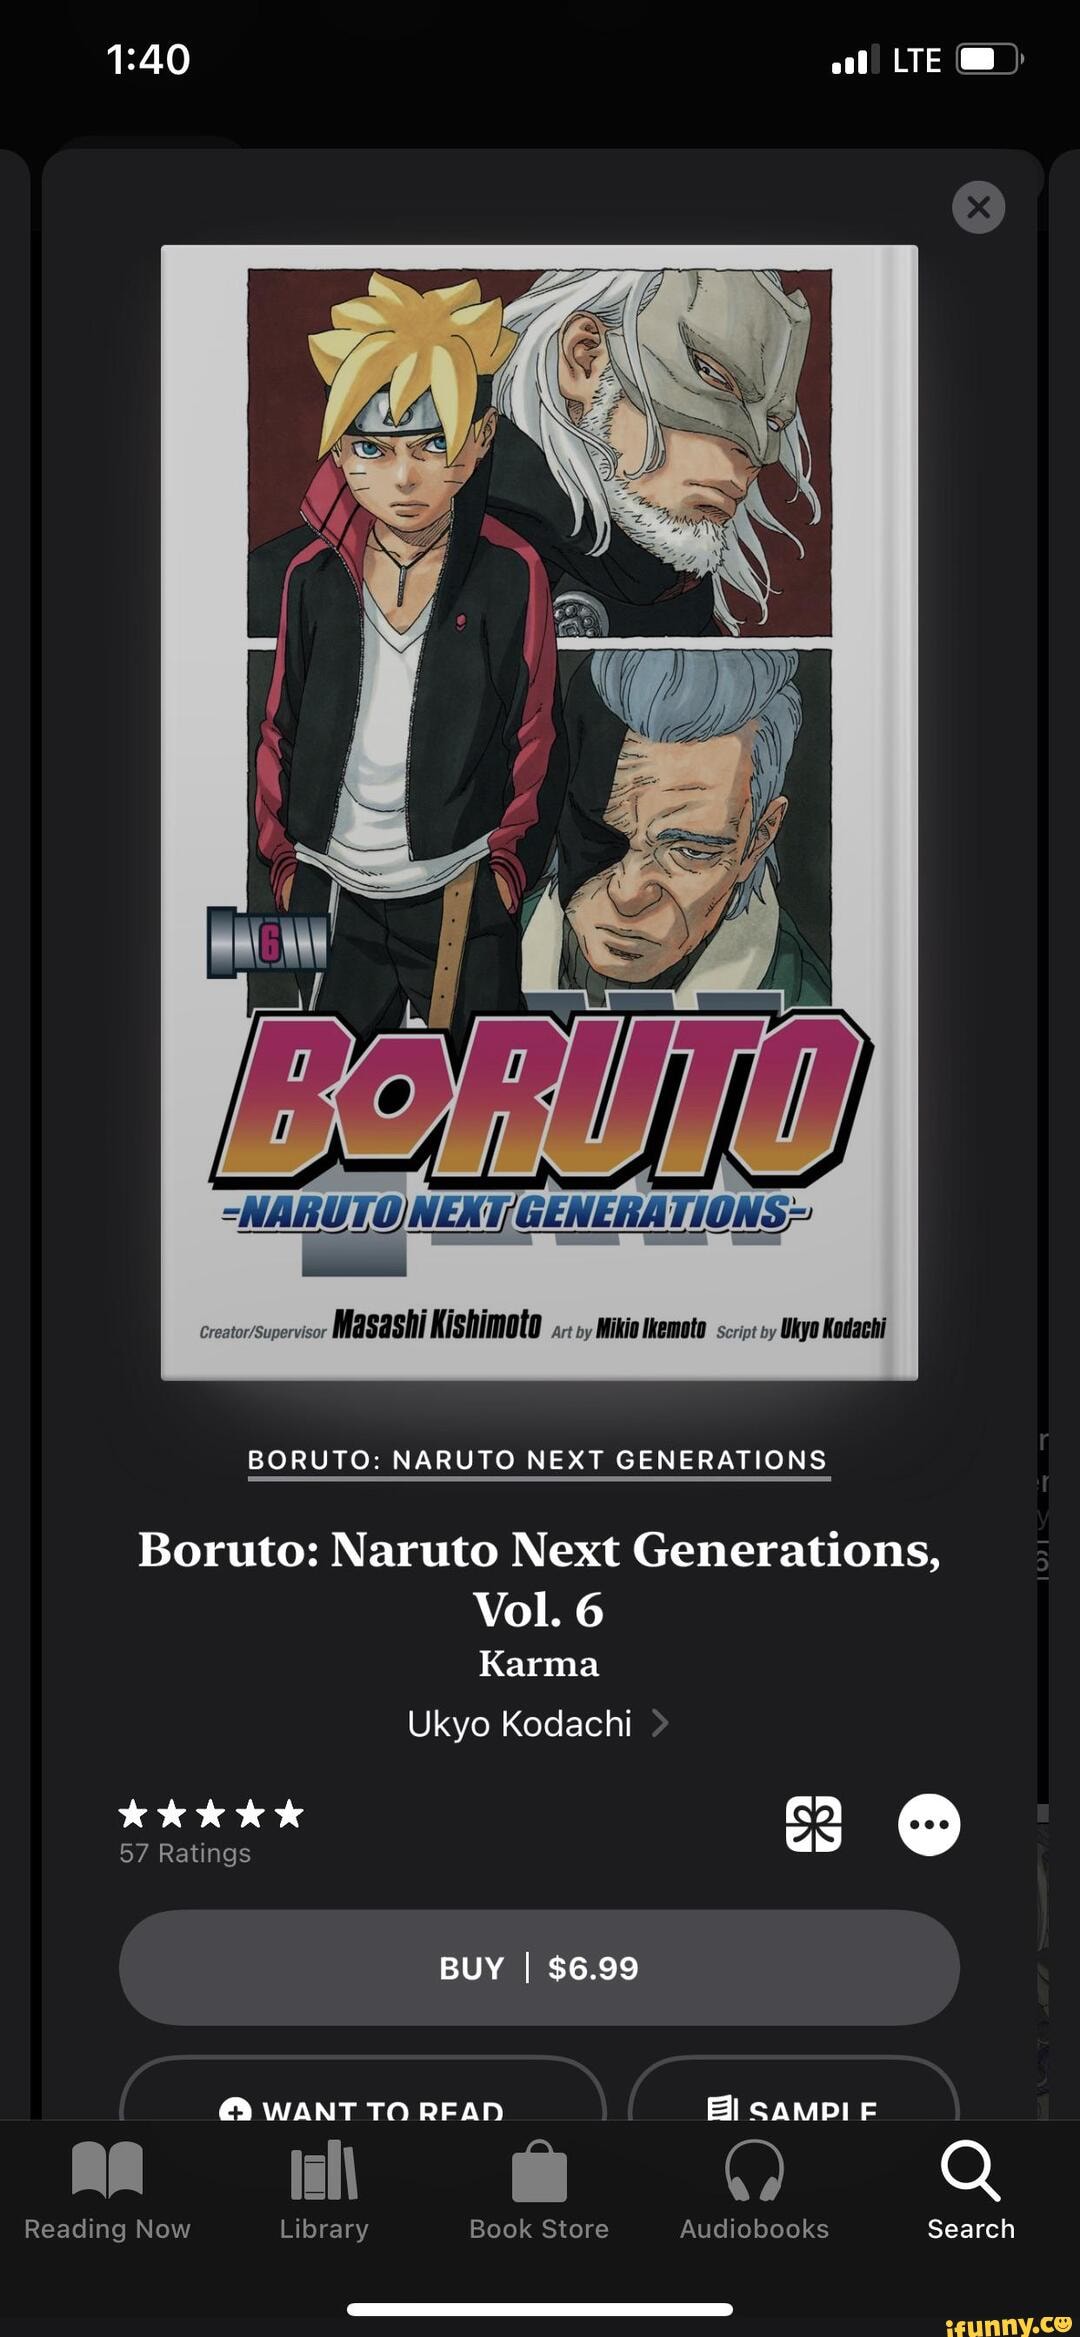 Lte Enarutonert Generations Mikio Ukyo Kodachi Boruto Naruto Next 7526